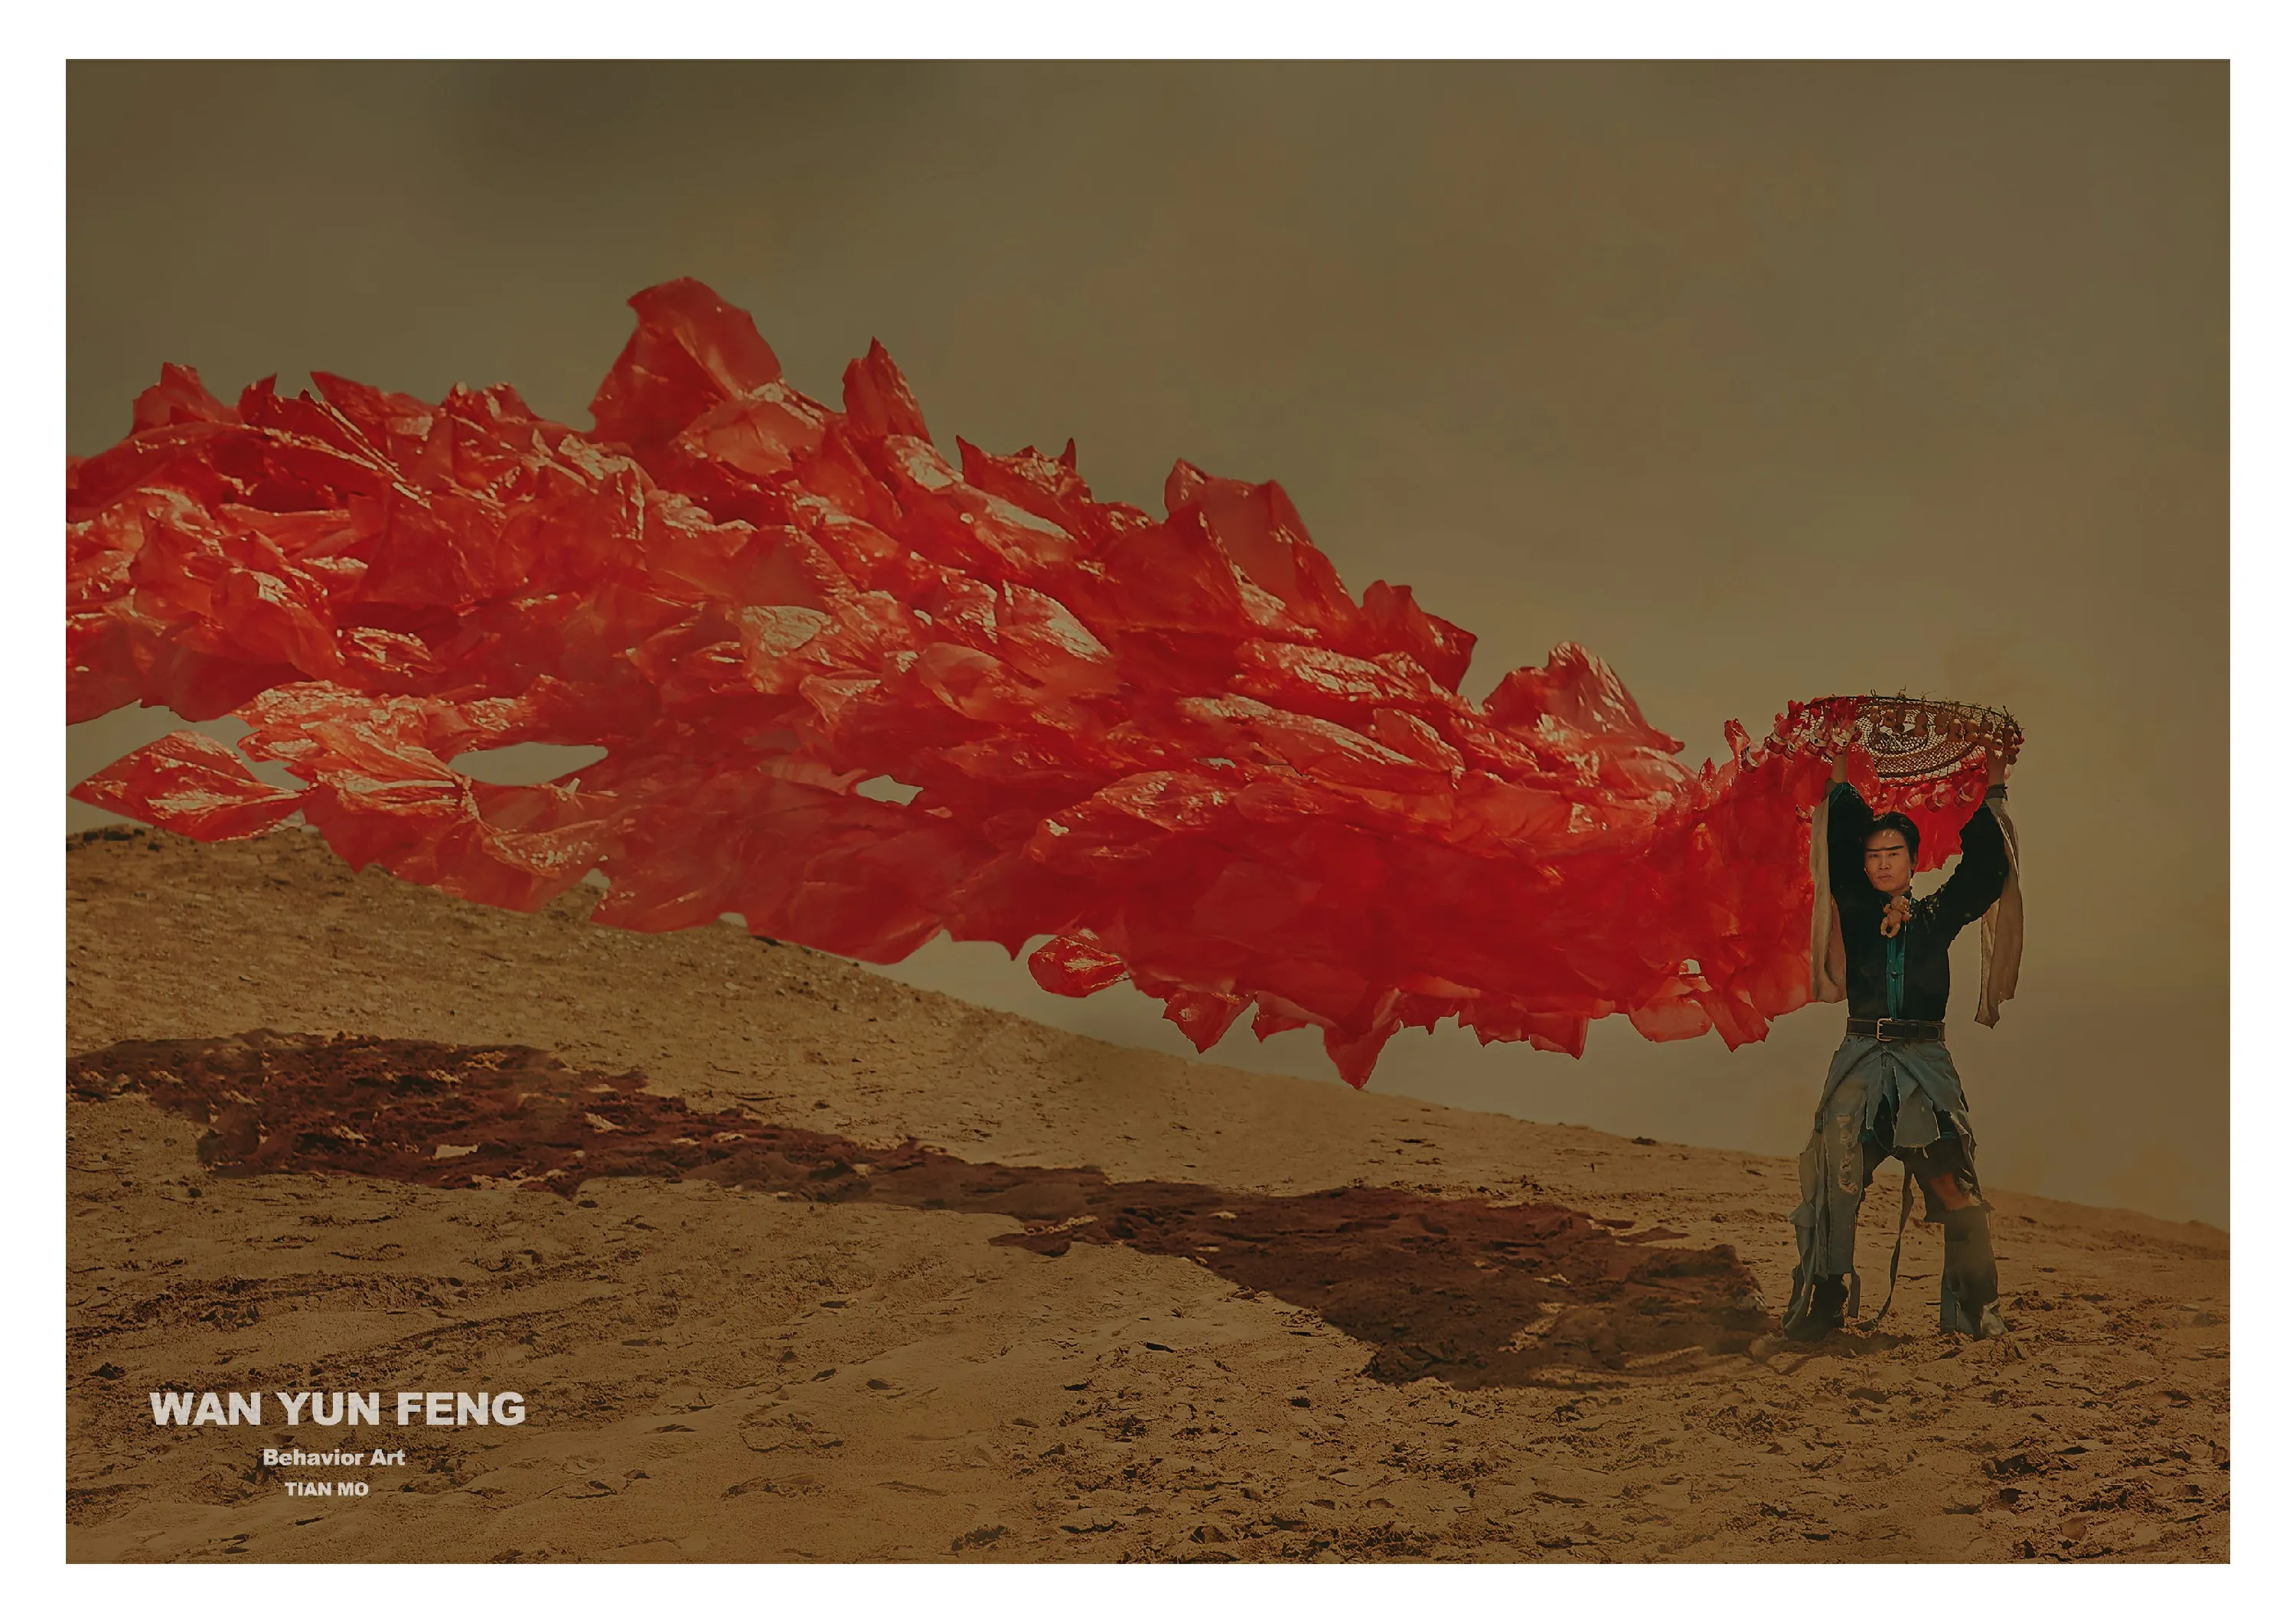 行為藝術家萬雲峯為宣傳環保在沙漠走秀12.jpg